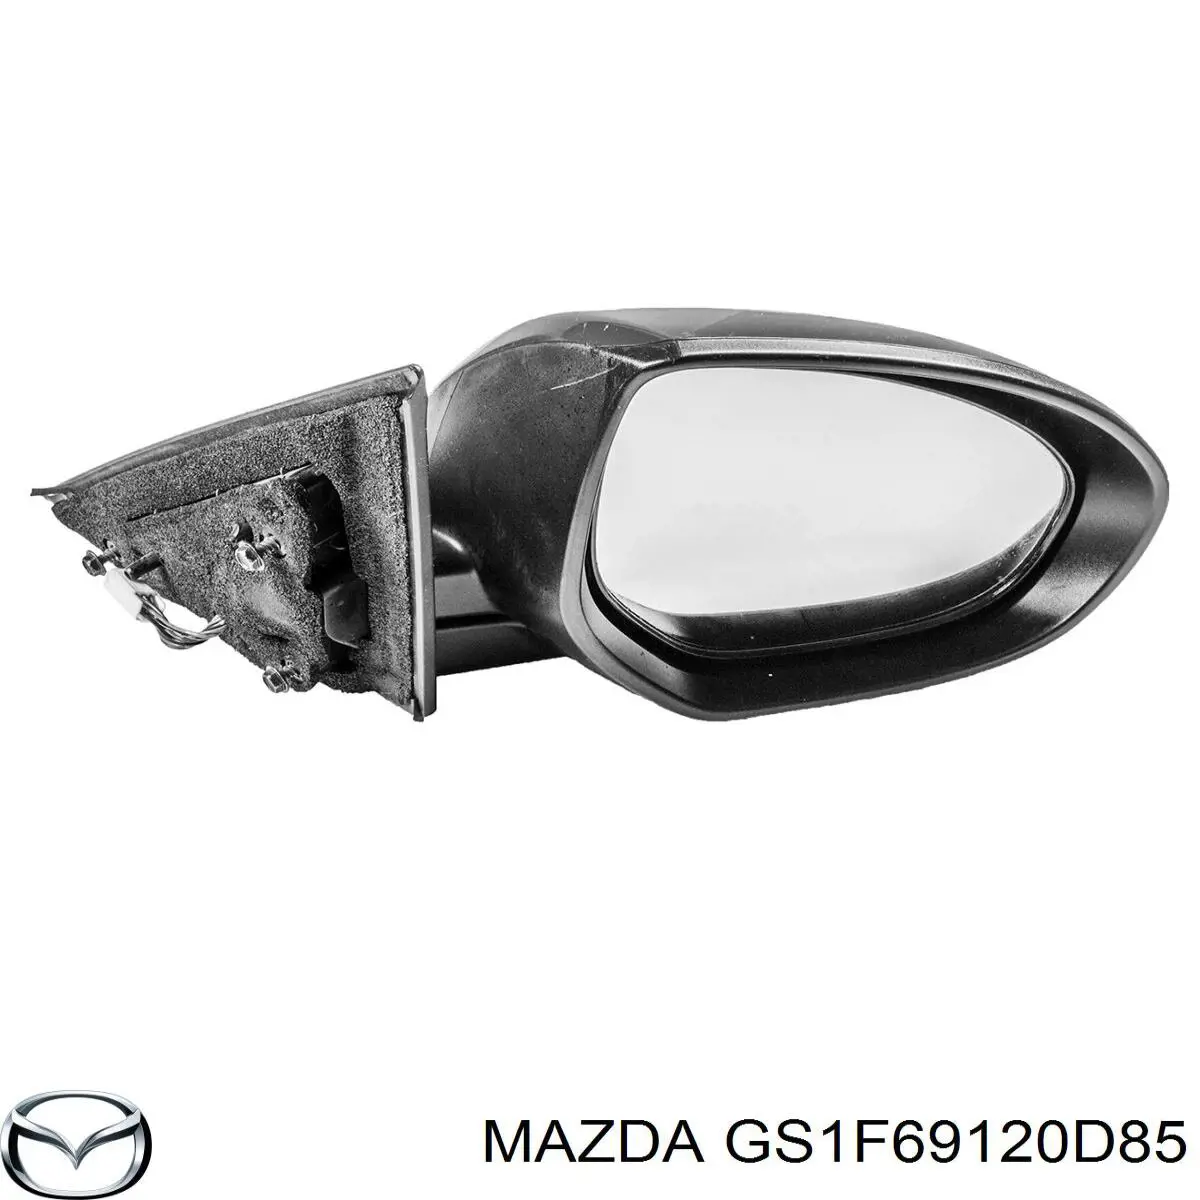 GS1F69120D85 Mazda espejo retrovisor derecho